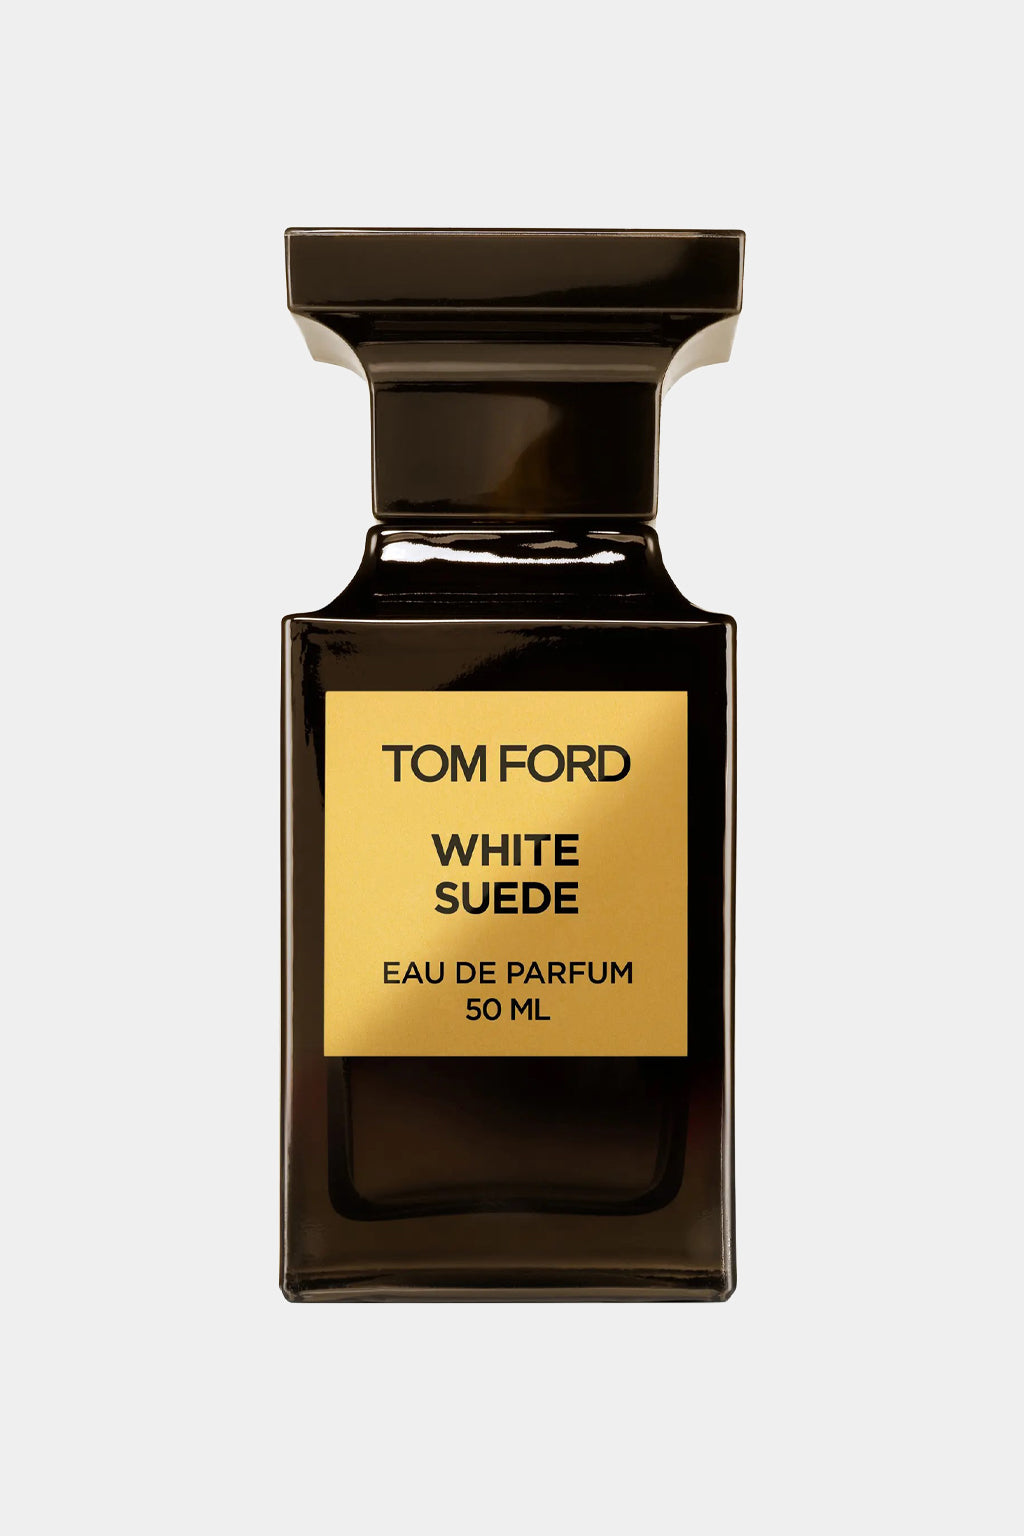 Tom Ford - White Suede Eau de Parfum